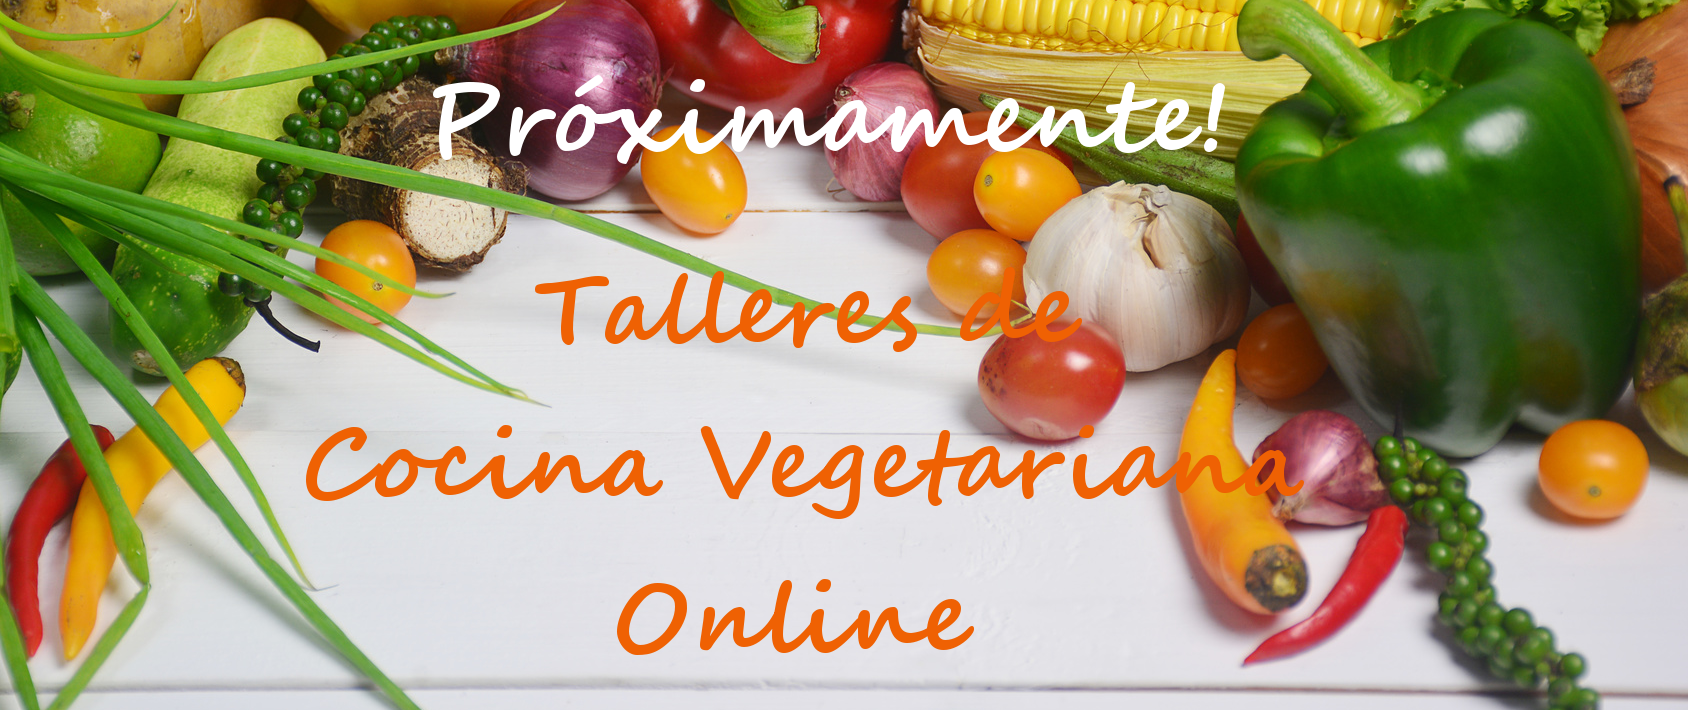 Talleres de Cocina Vegetariana (información)